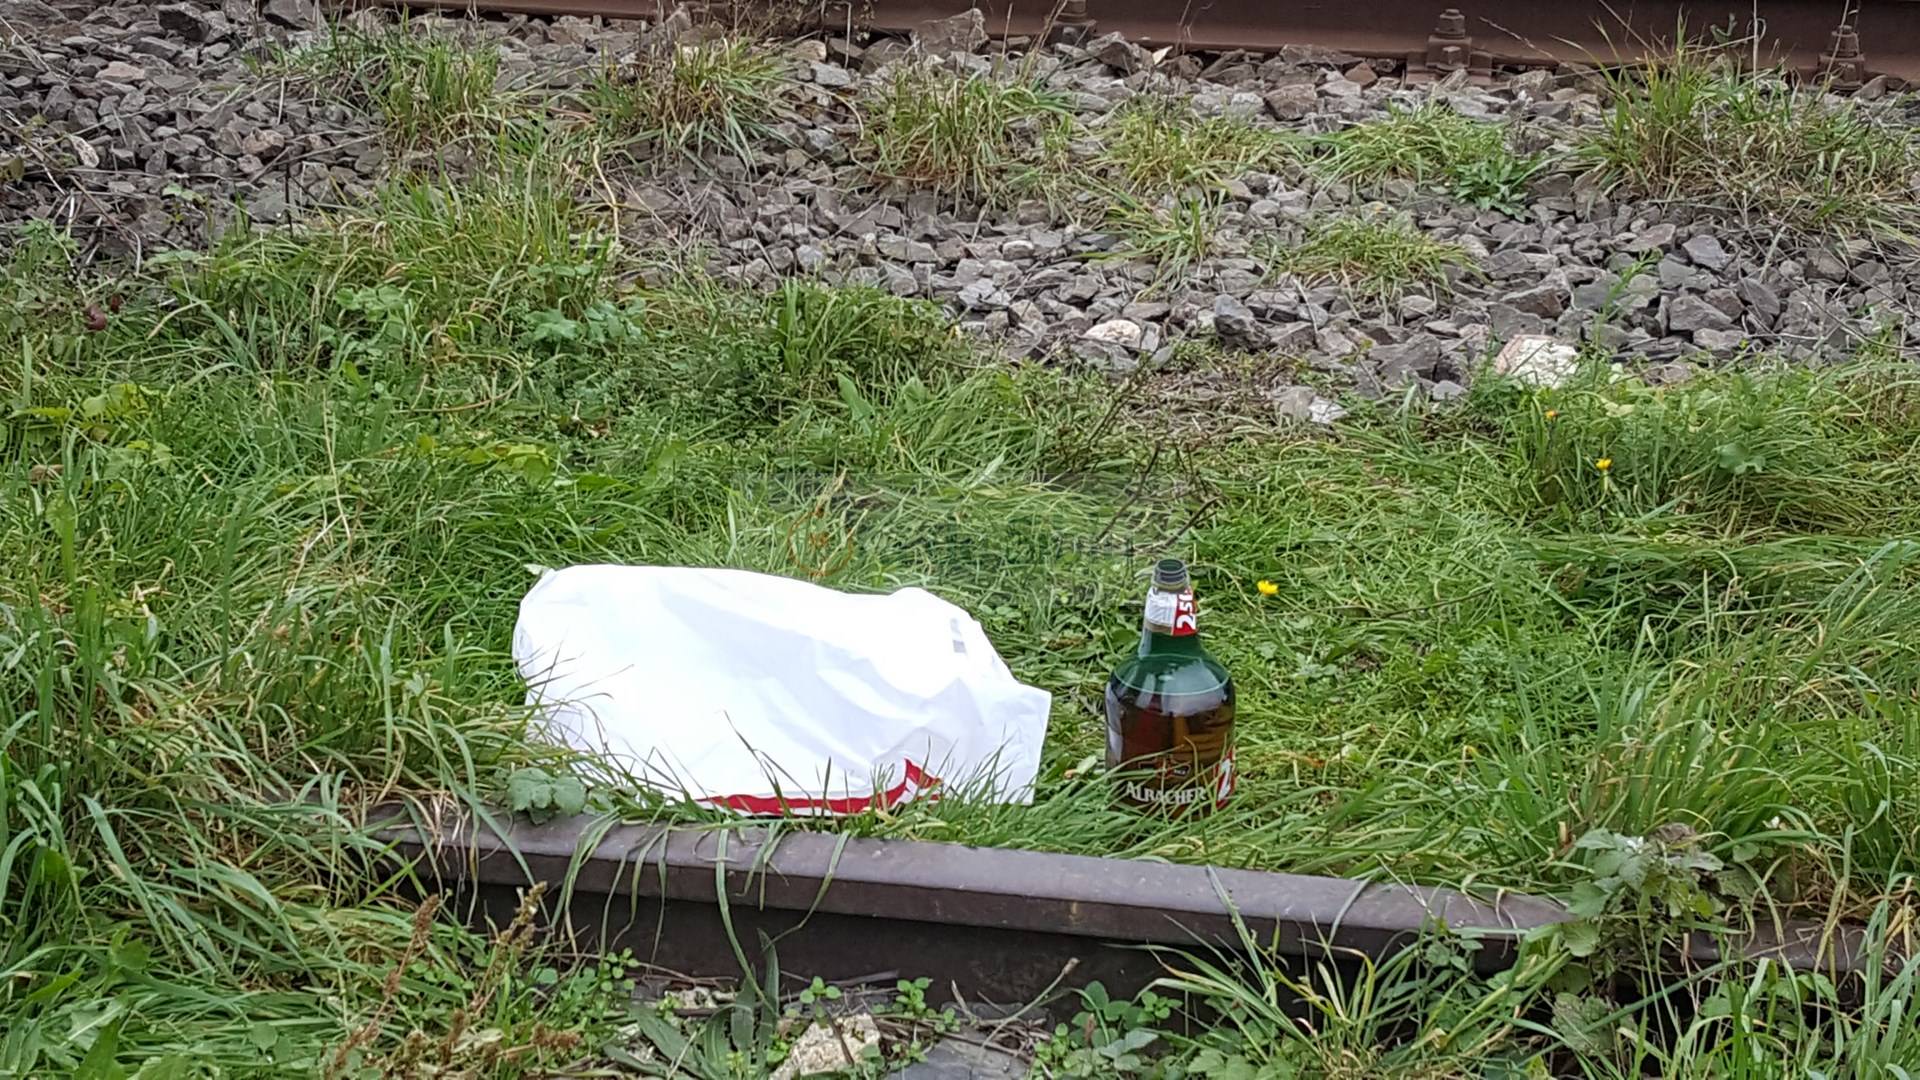 video foto – bărbat din vâlcea, lovit mortal de tren pe câmpului. i-a retezat capul! (imagini dure)